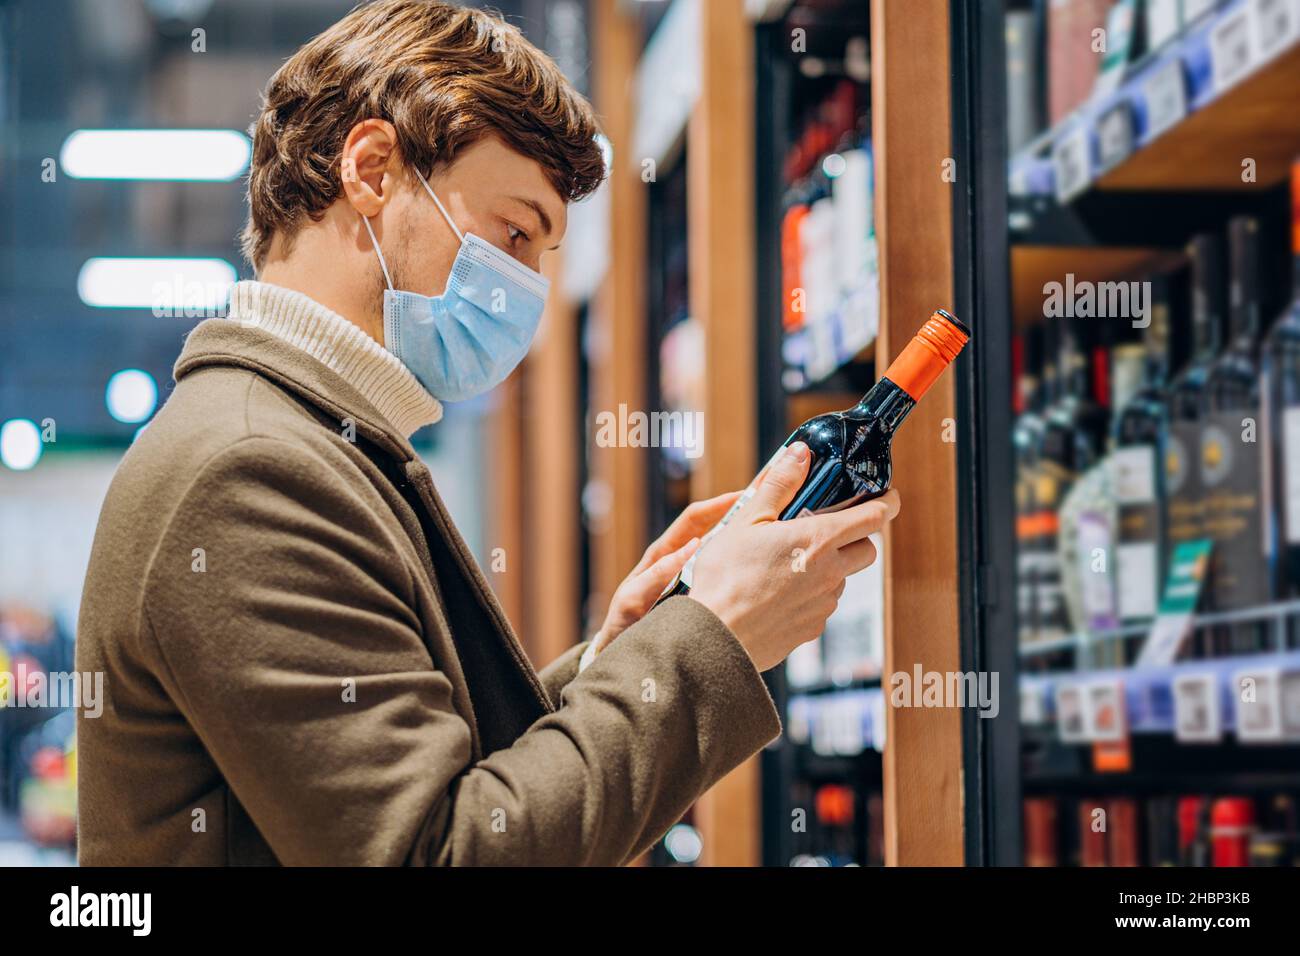 homme réussi dans un manteau avec un masque lit l'étiquette sur une bouteille de vin dans un supermarché moderne, choisit une boisson alcoolisée, étudie la composition Banque D'Images